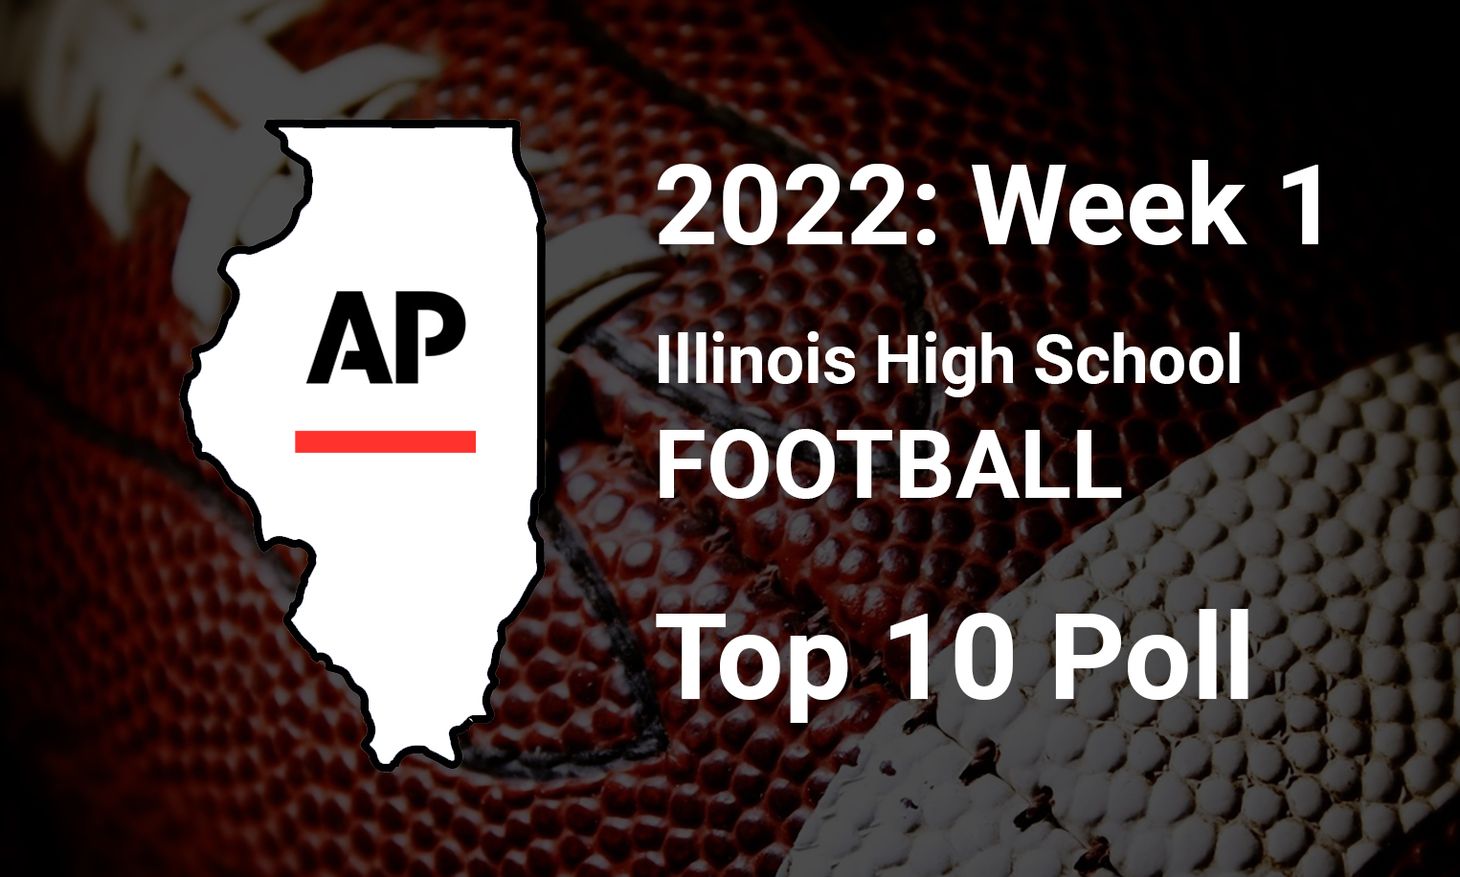 Week 1: 2022 Illinois High School Football Top 10 Poll